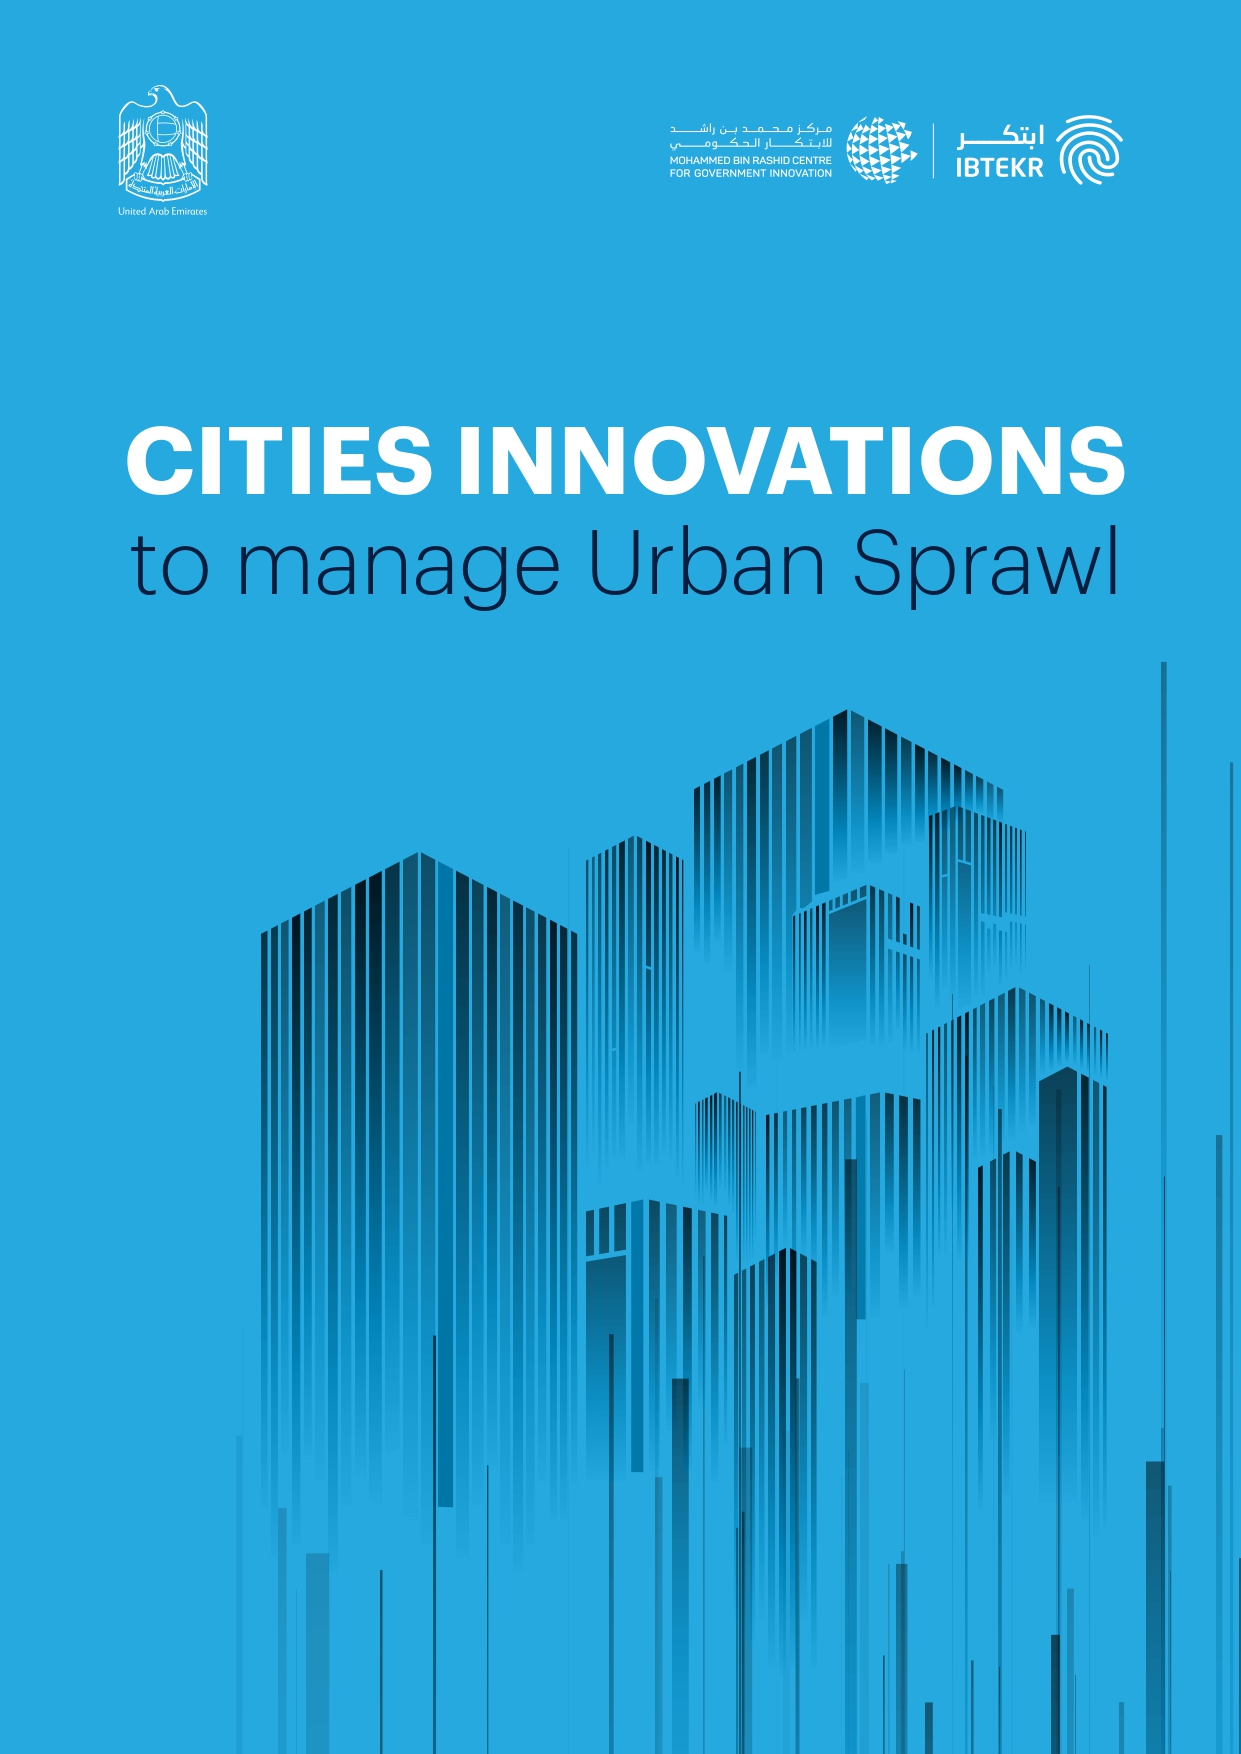 CITIES INNOVATIONS to manage Urban Sprawl